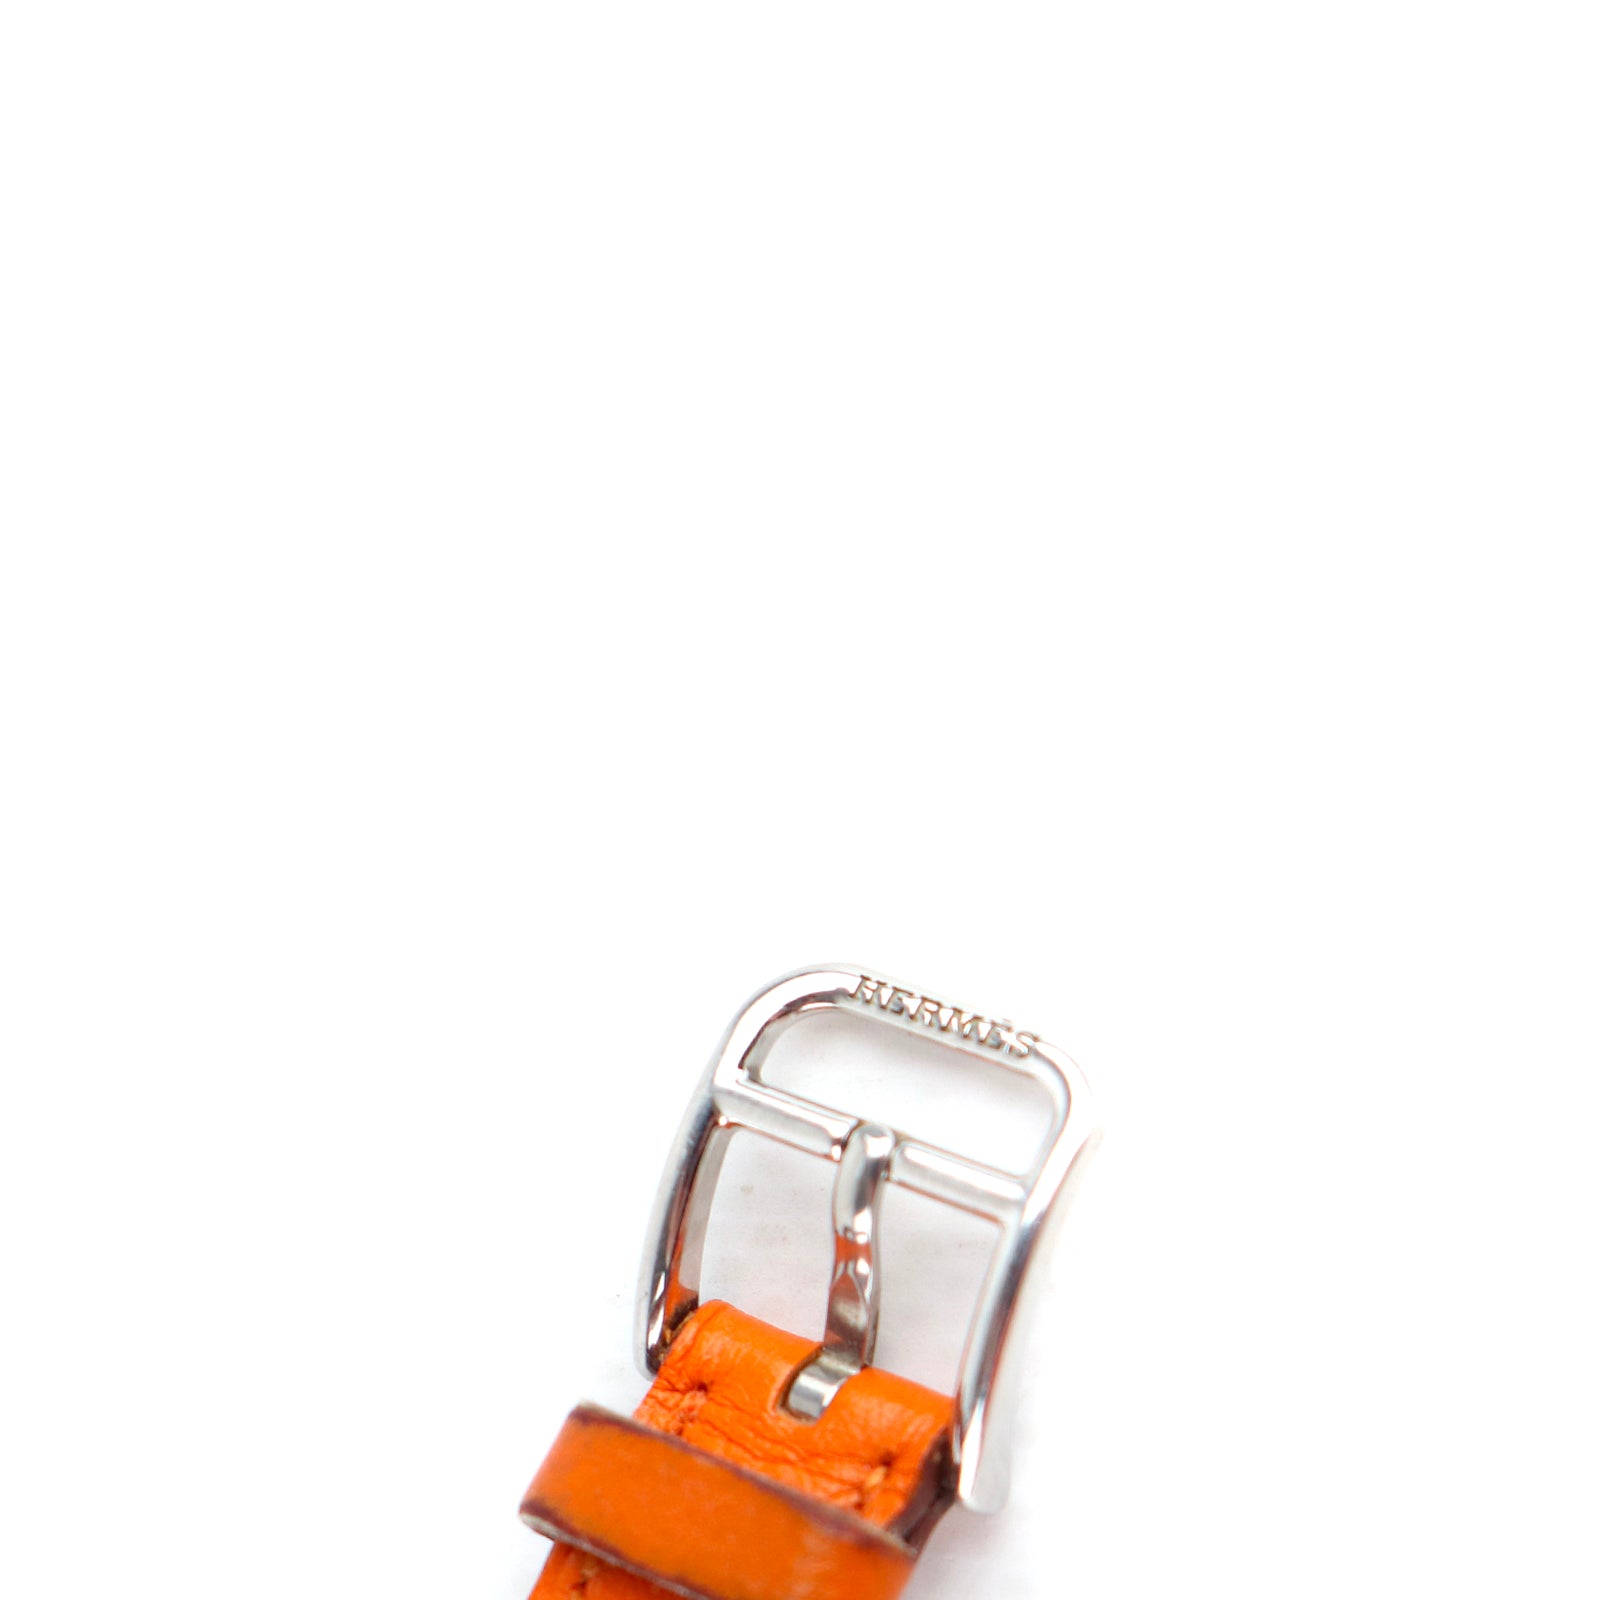 HERMÈS - Montre Cape Cod Petit Modèle 31 mm en cuir orange